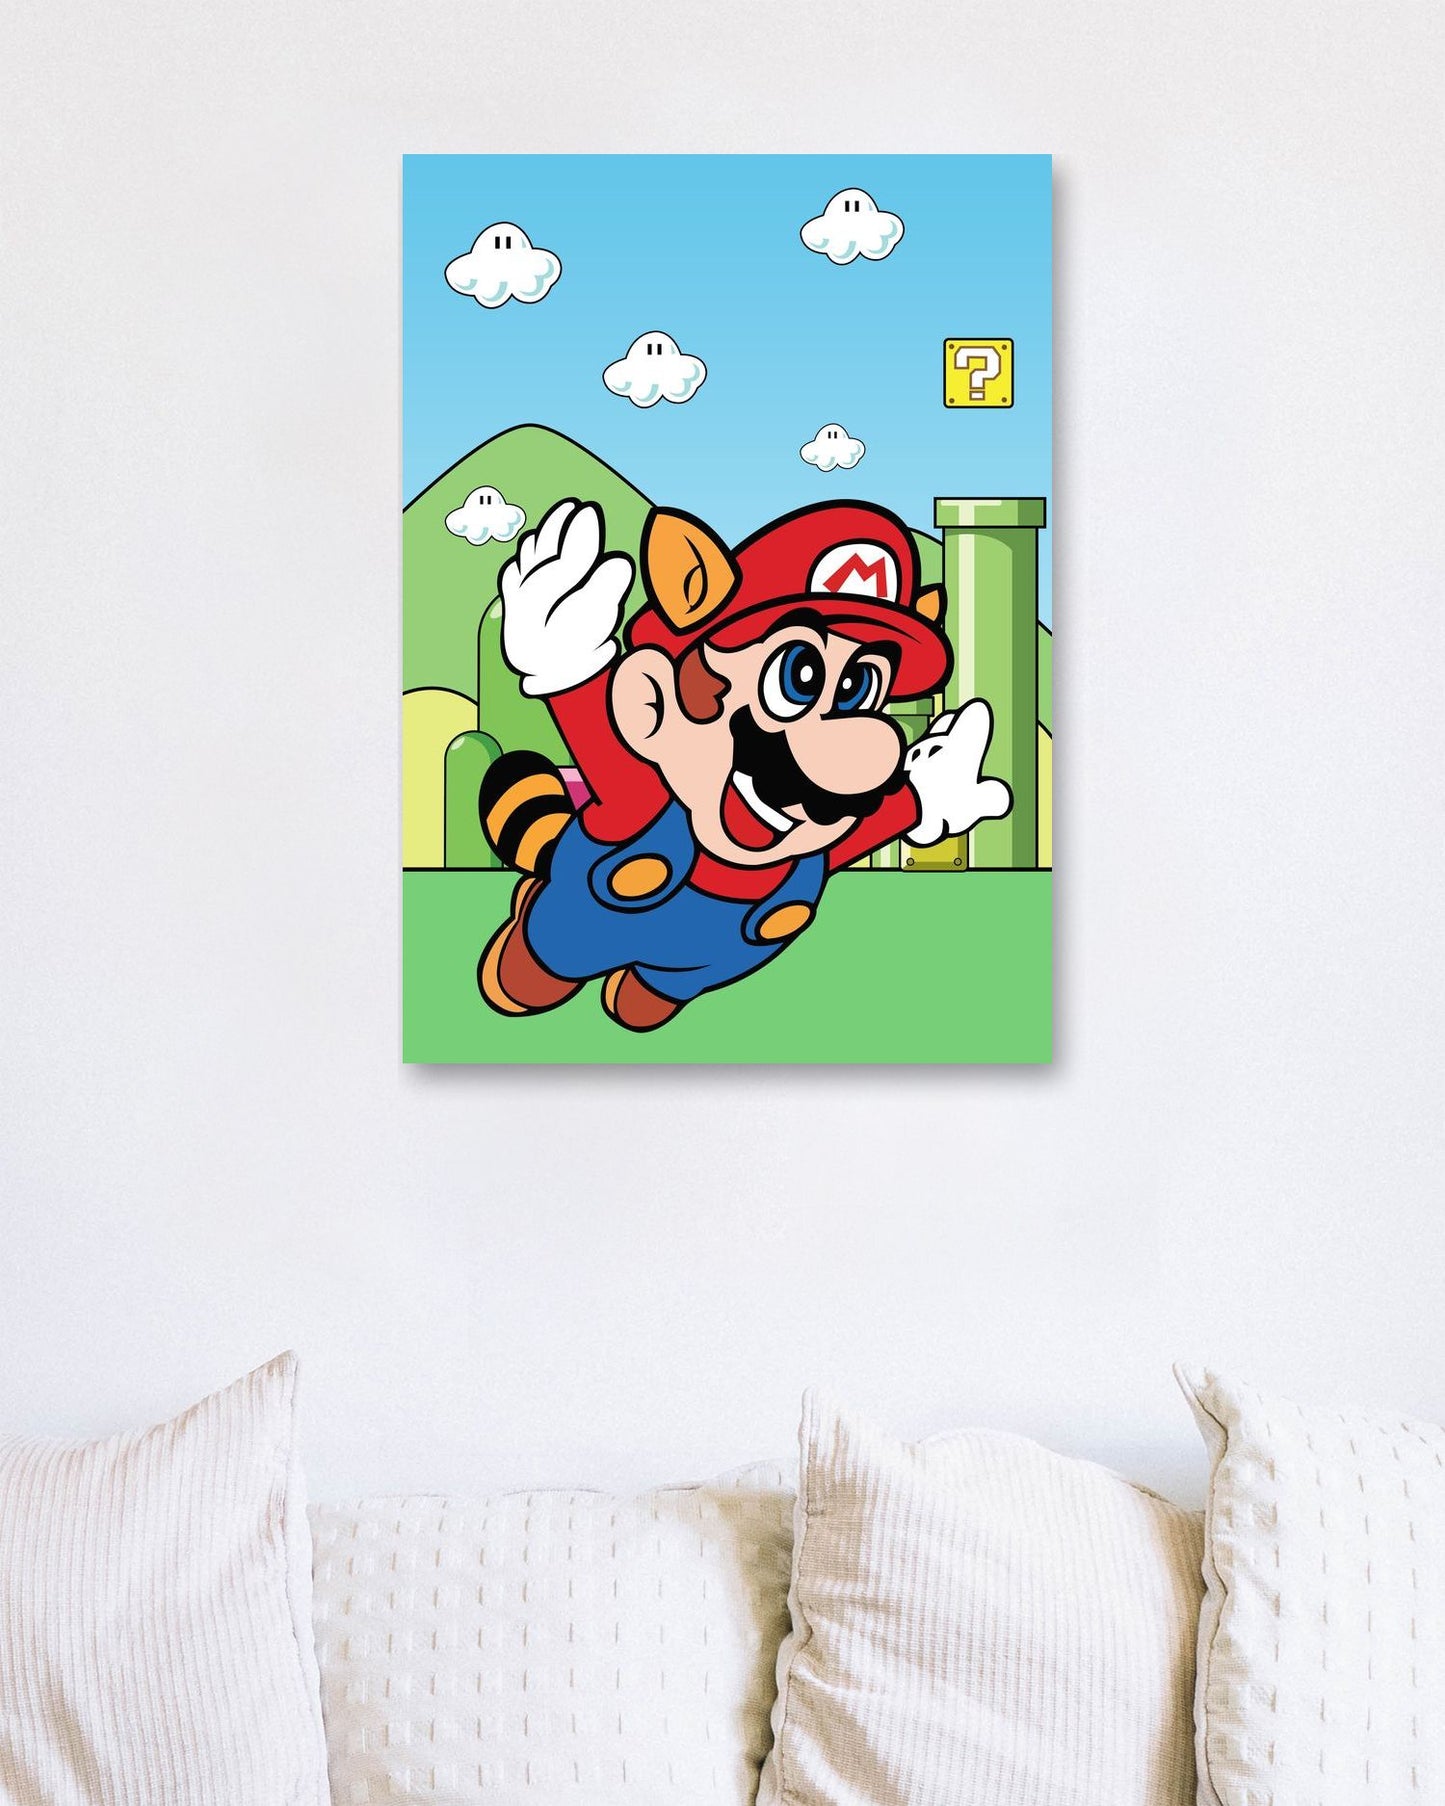 Super Mario Bros - Super Mario Game - @GreyArt